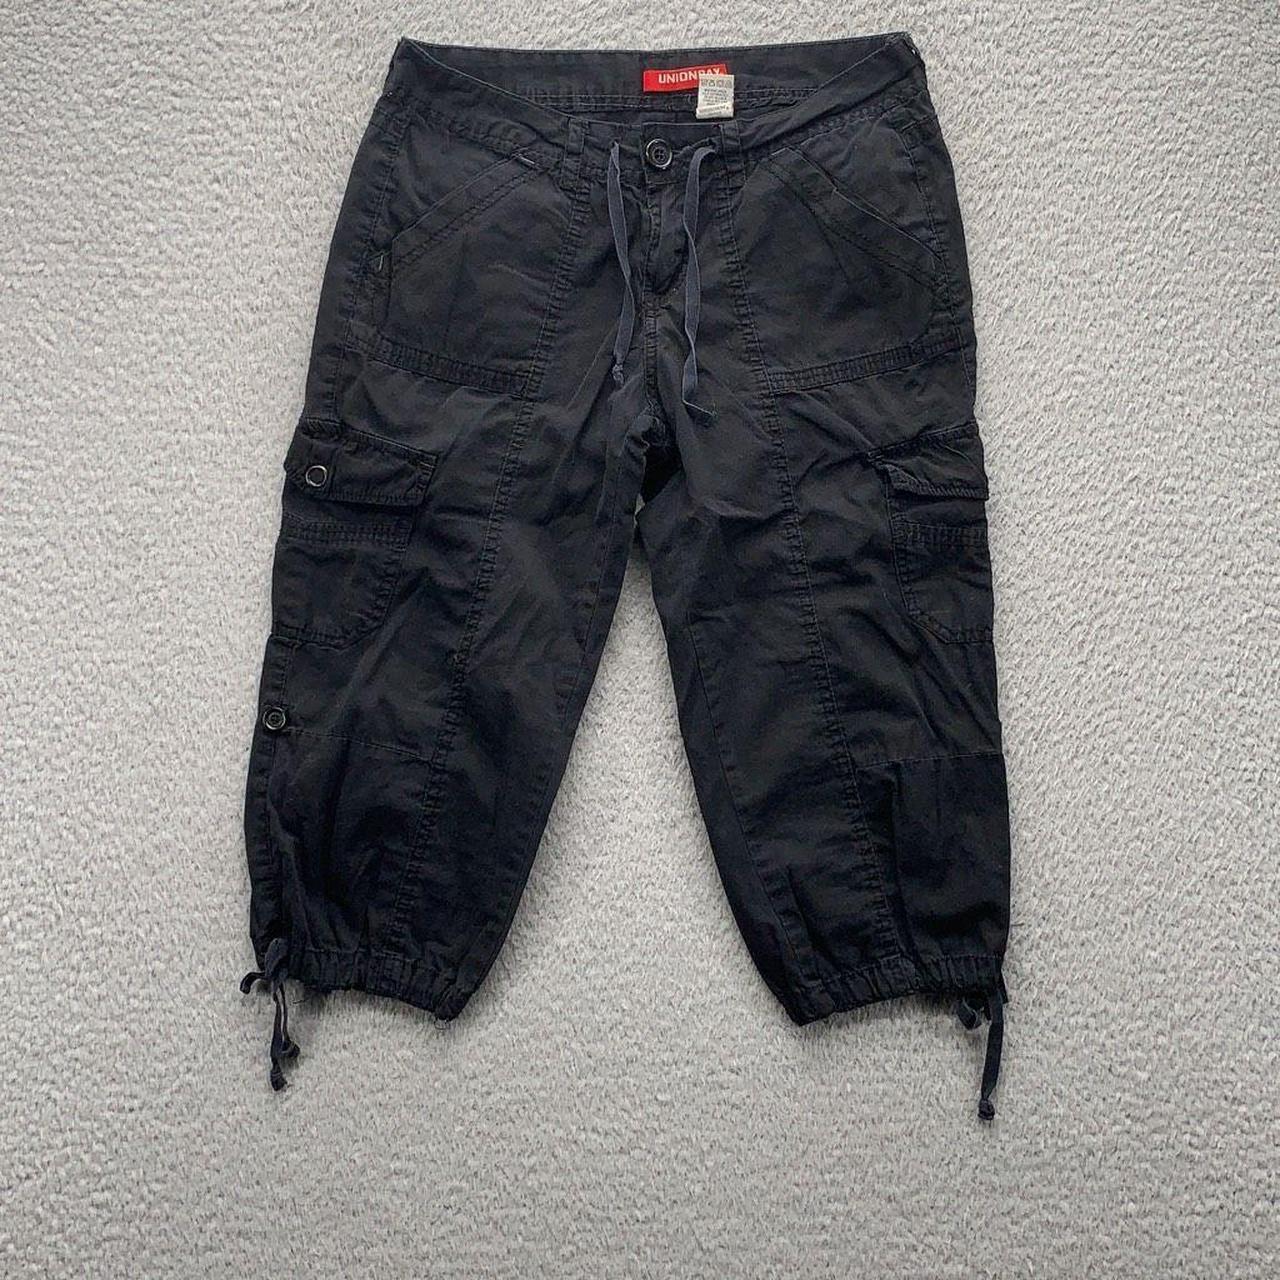 Y2k capri pants black utility pants Vintage 2000s - Depop